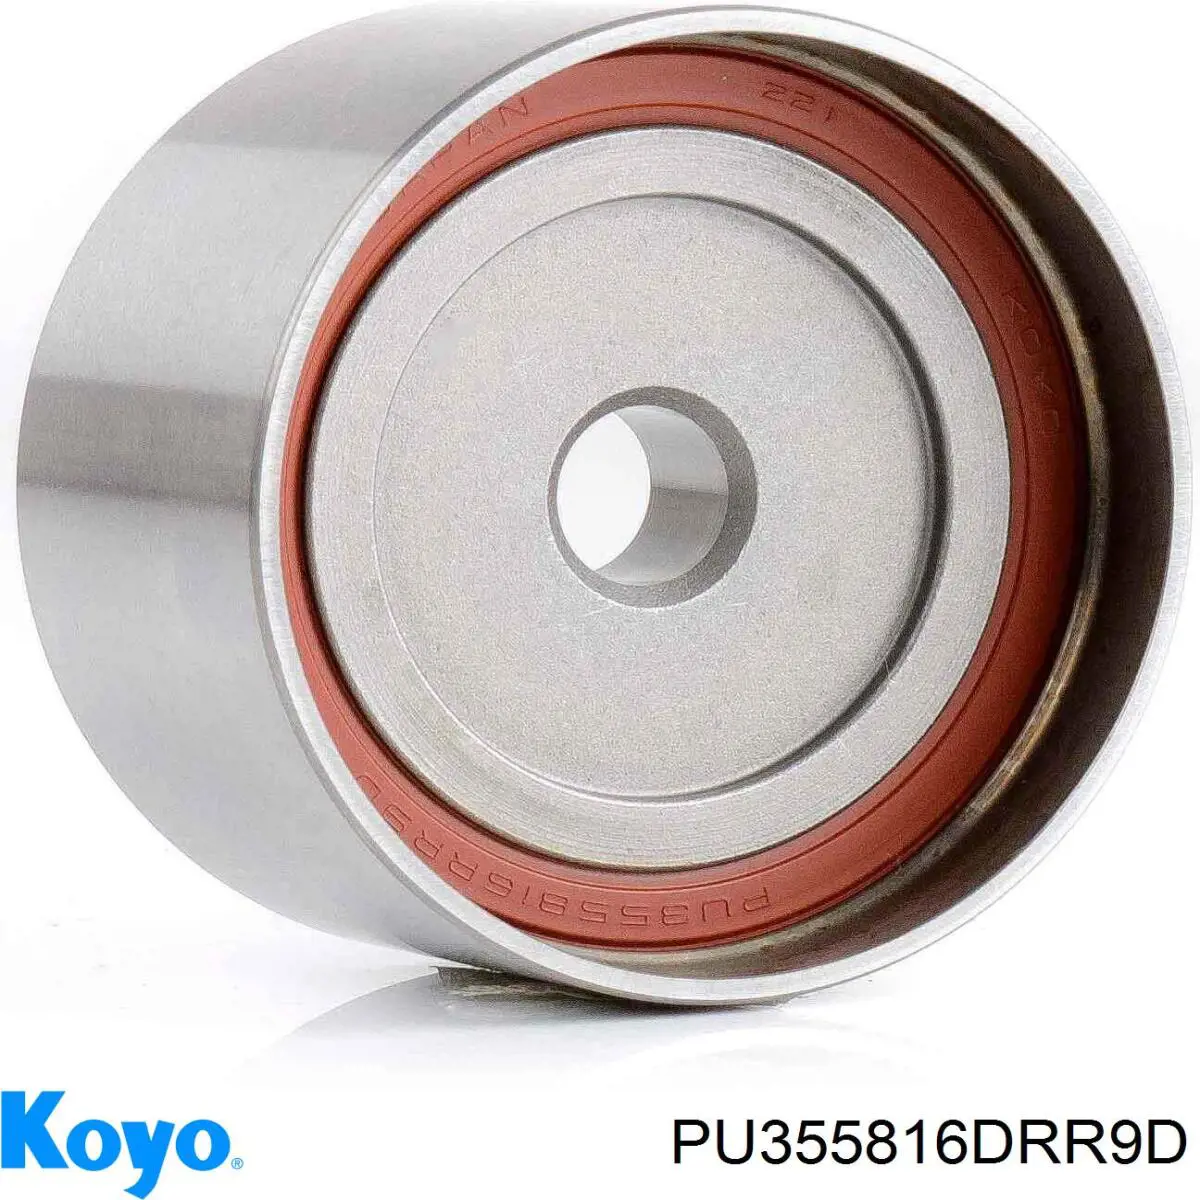 PU355816DRR9D Koyo rolo parasita da correia do mecanismo de distribuição de gás